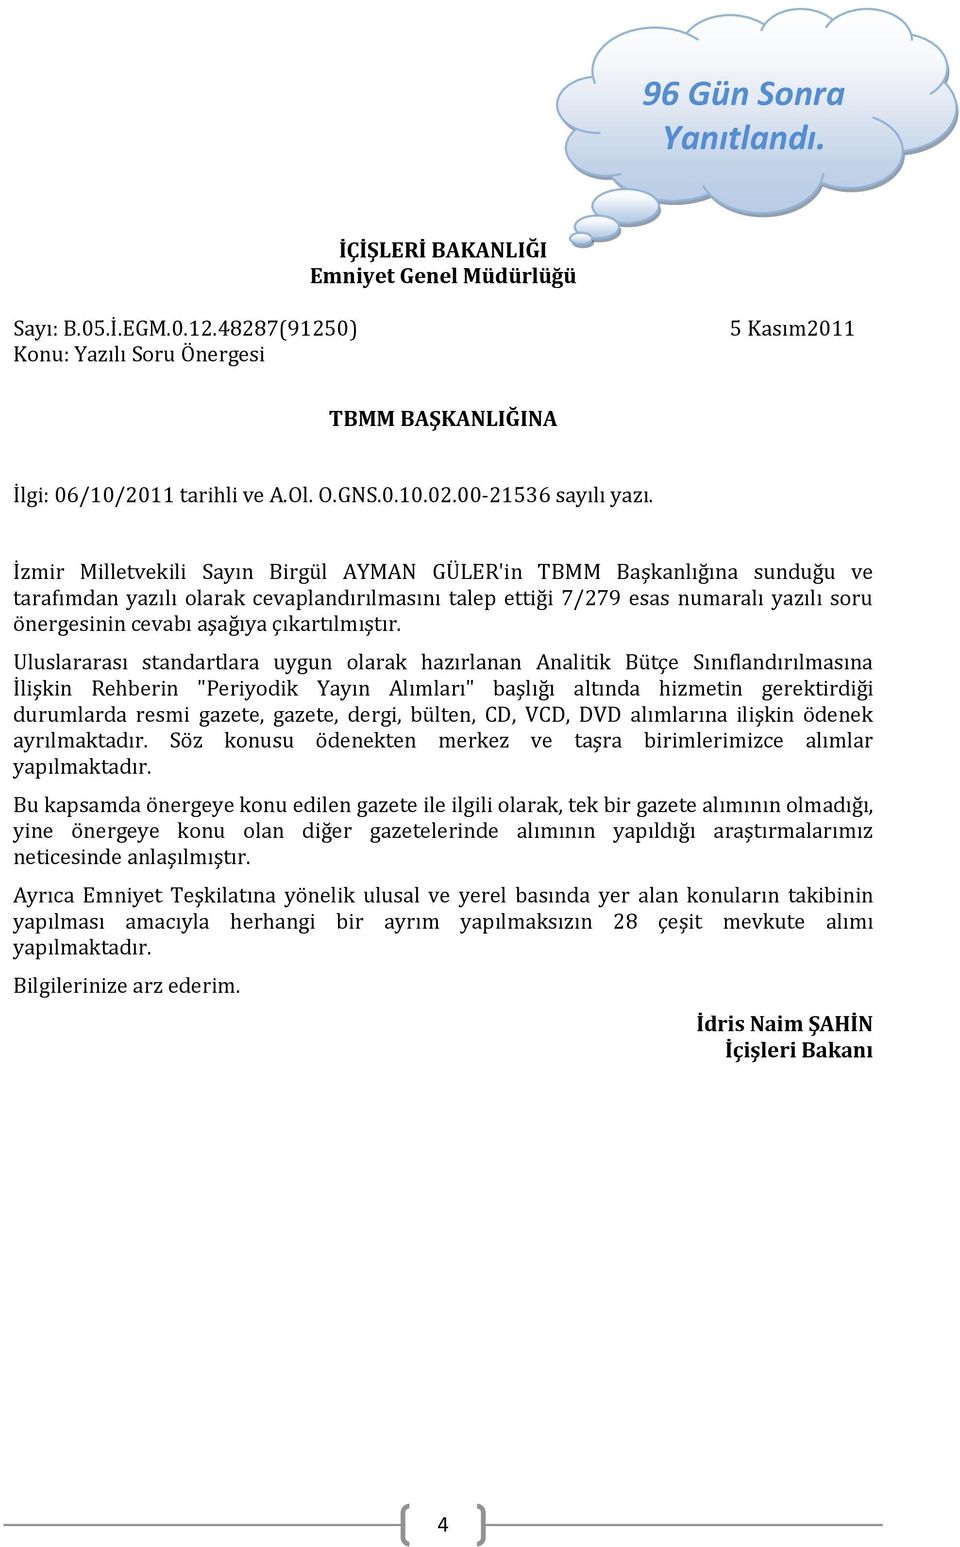 İzmir Milletvekili Sayın Birgül AYMAN GÜLER'in TBMM Başkanlığına sunduğu ve tarafımdan yazılı olarak cevaplandırılmasını talep ettiği 7/279 esas numaralı yazılı soru önergesinin cevabı aşağıya